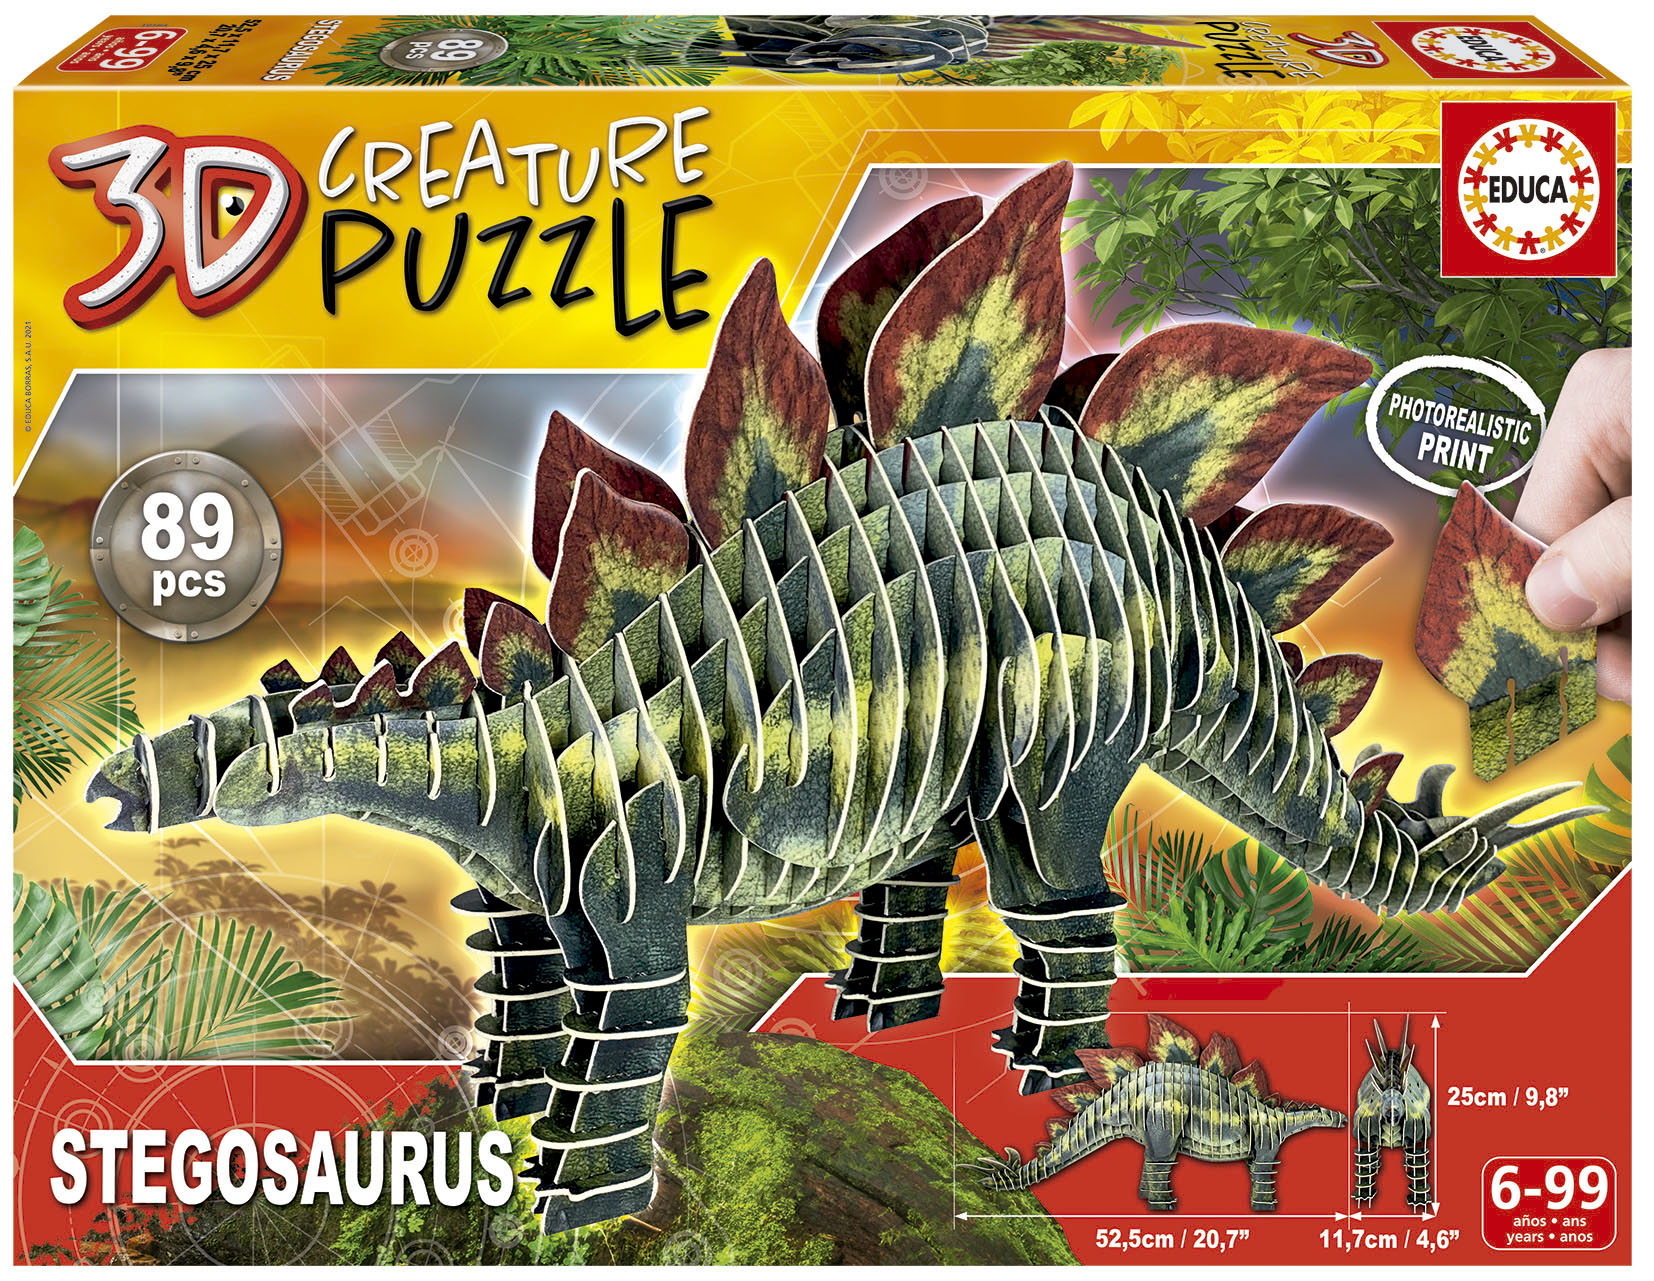 Stegosaurus 3D Creature Puzzle